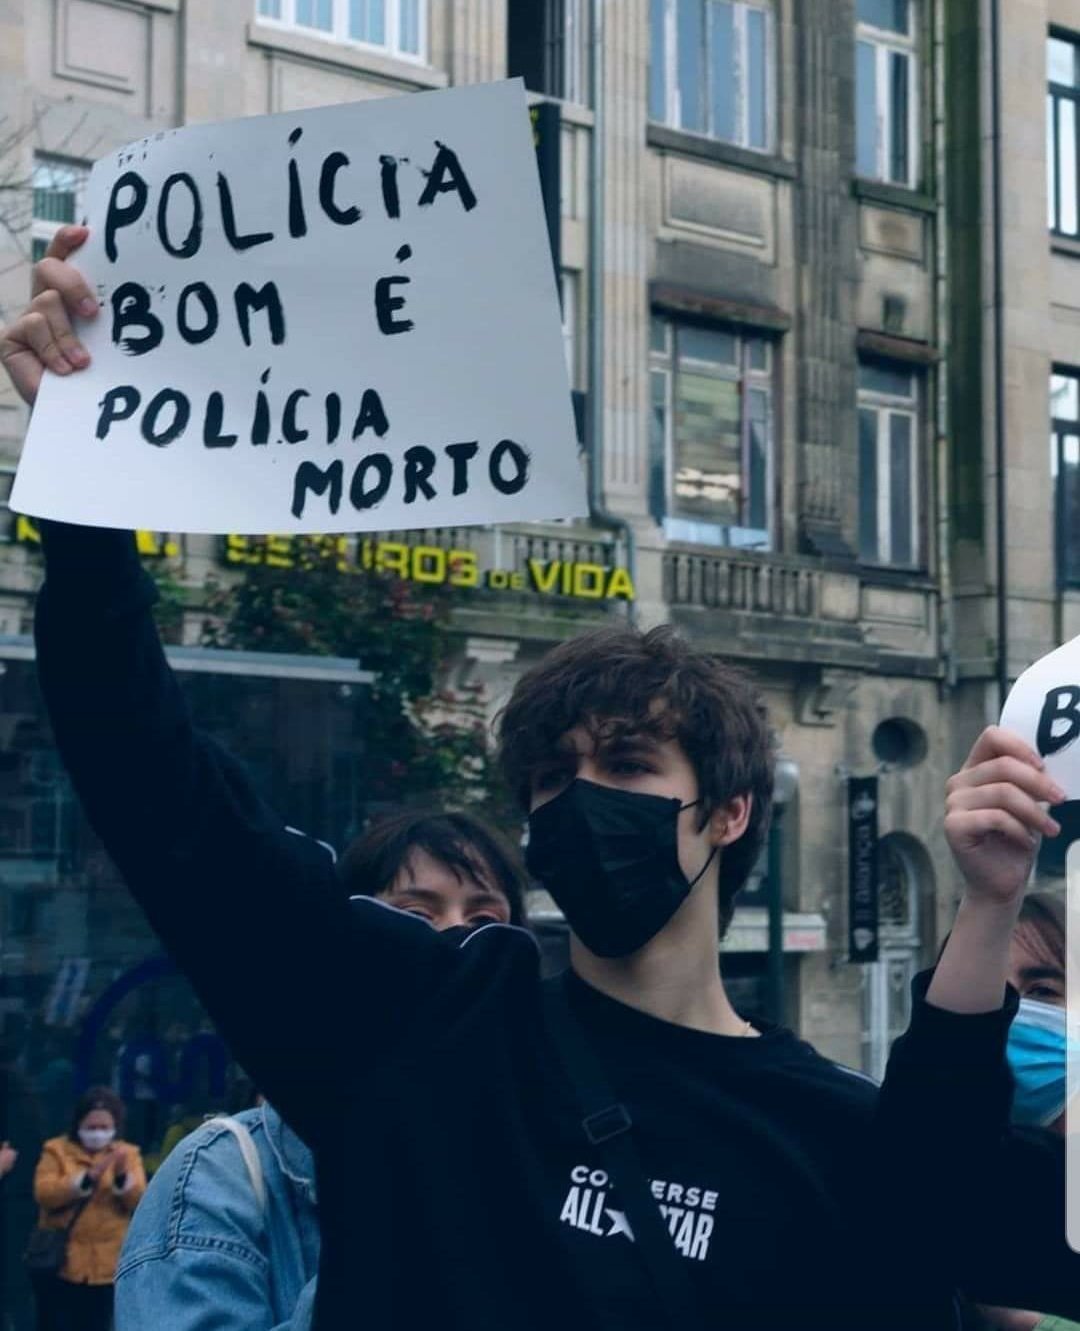 No Porto, jovem com cartaz de ÓDIO já foi identificado: "Polícia bom é polícia morto"